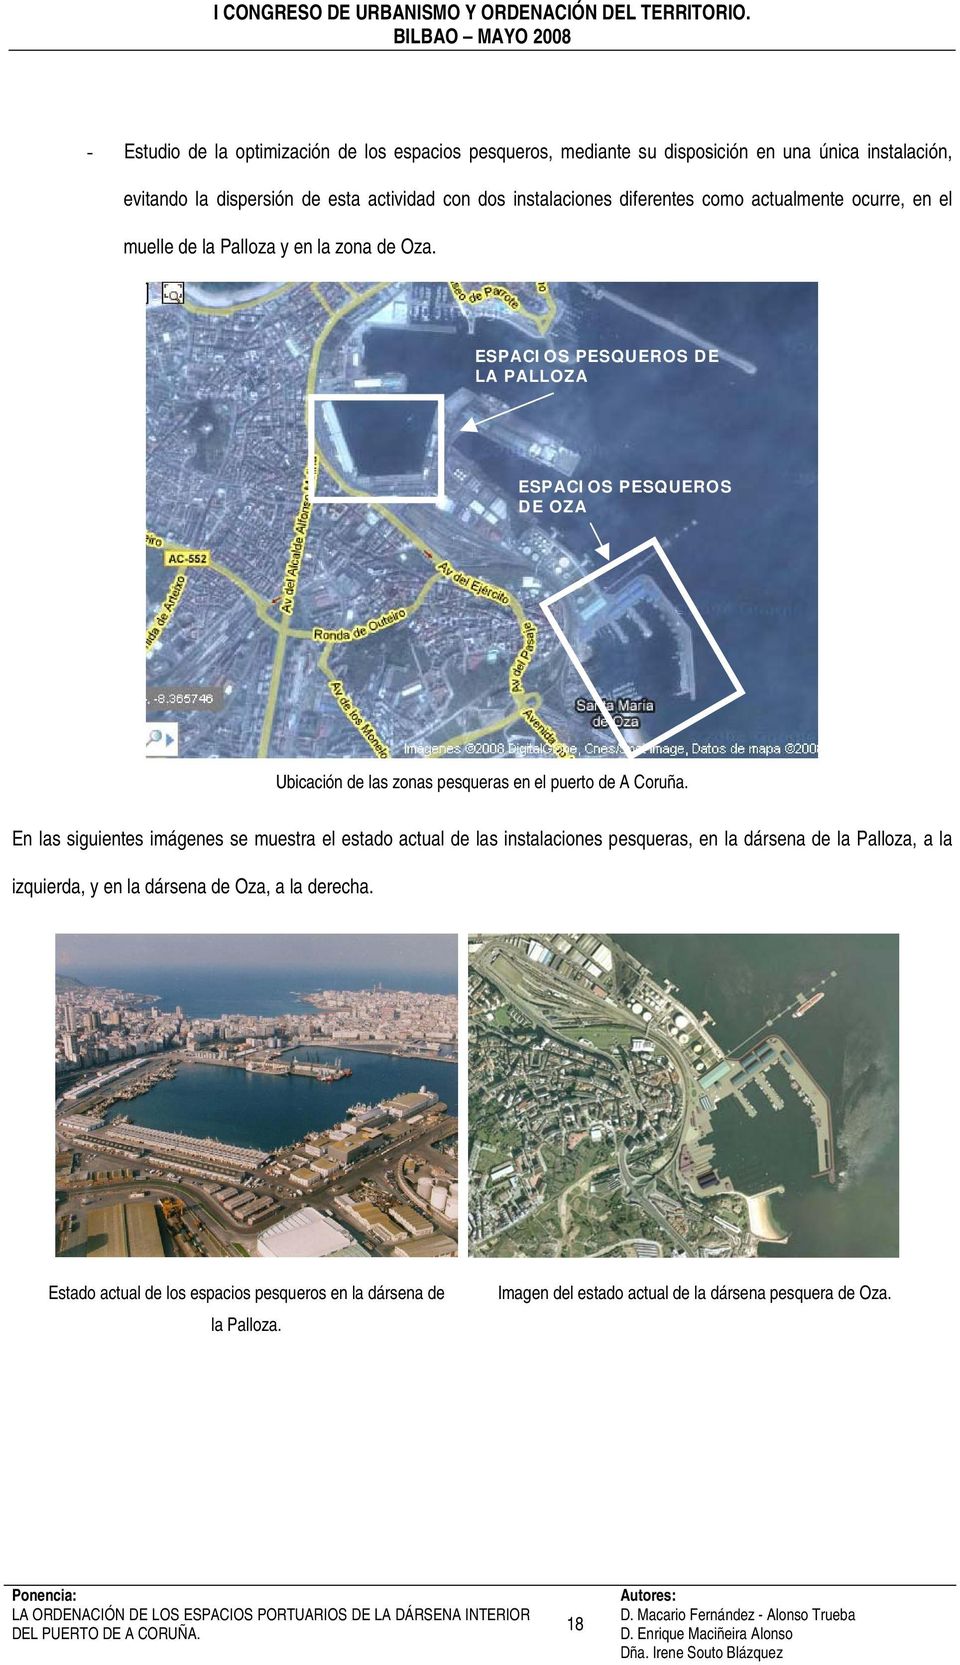 ESPACIOS PESQUEROS DE LA PALLOZA ESPACIOS PESQUEROS DE OZA Ubicación de las zonas pesqueras en el puerto de A Coruña.